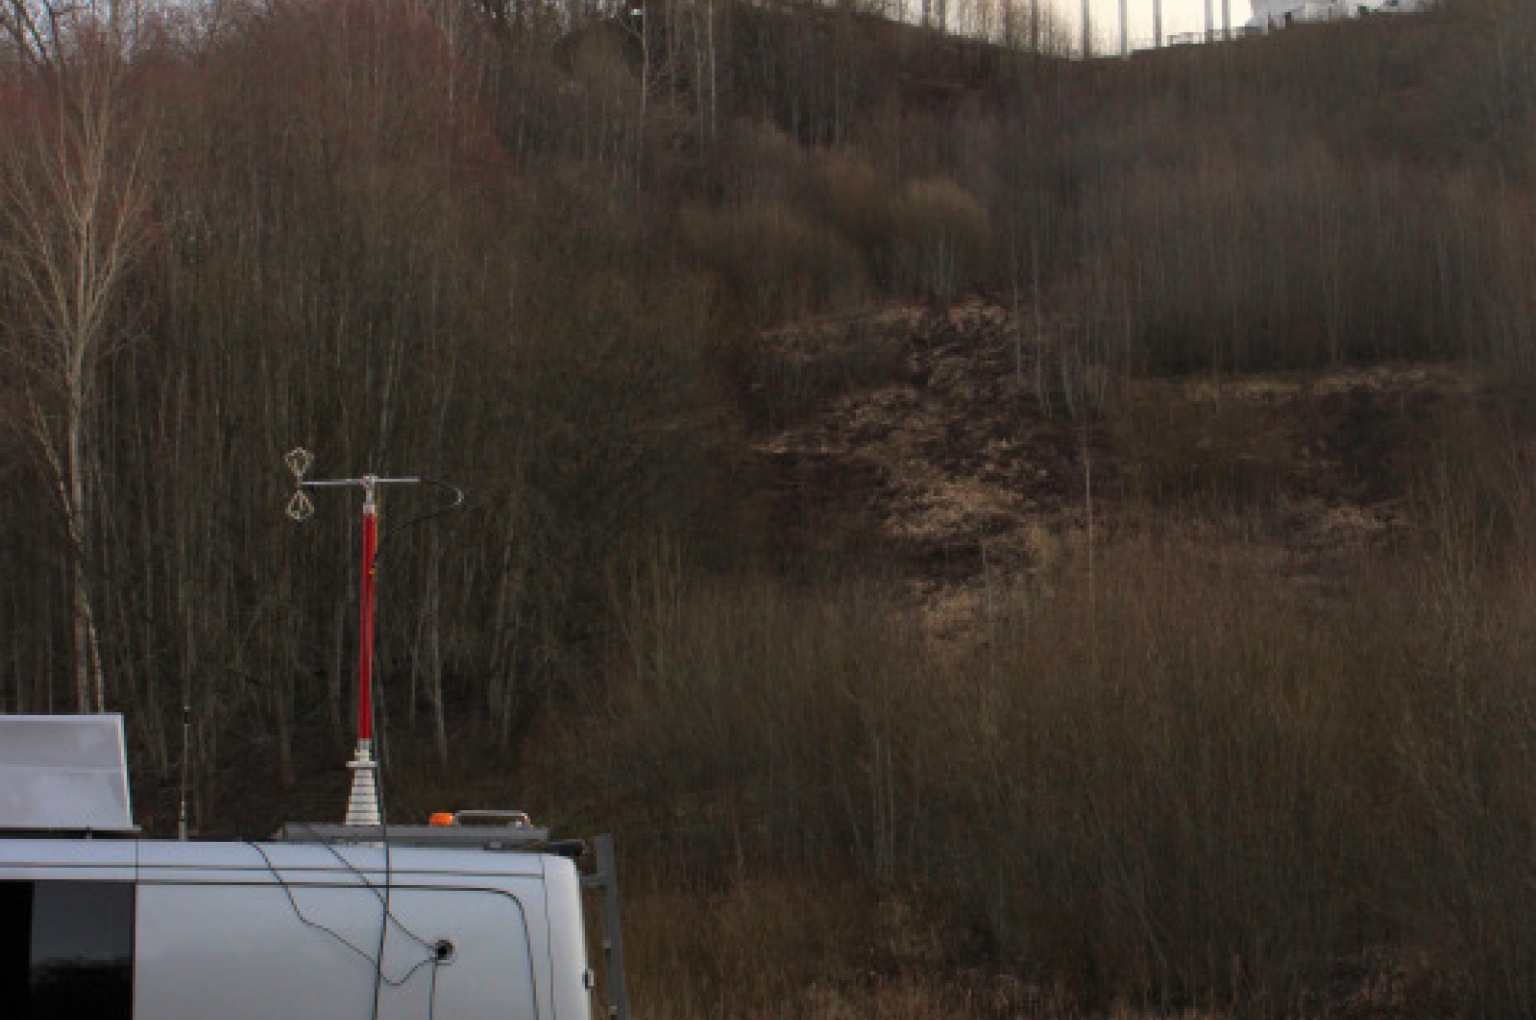 Radiofrekvenču spektra uzraudzības nodaļas inženieri veic radiofrekvenču spektra izmantošanas uzraudzību Viessmann Pasaules kausa kamaniņu sportā pasākuma laikā (25. - 26.janvārī), Siguldā.